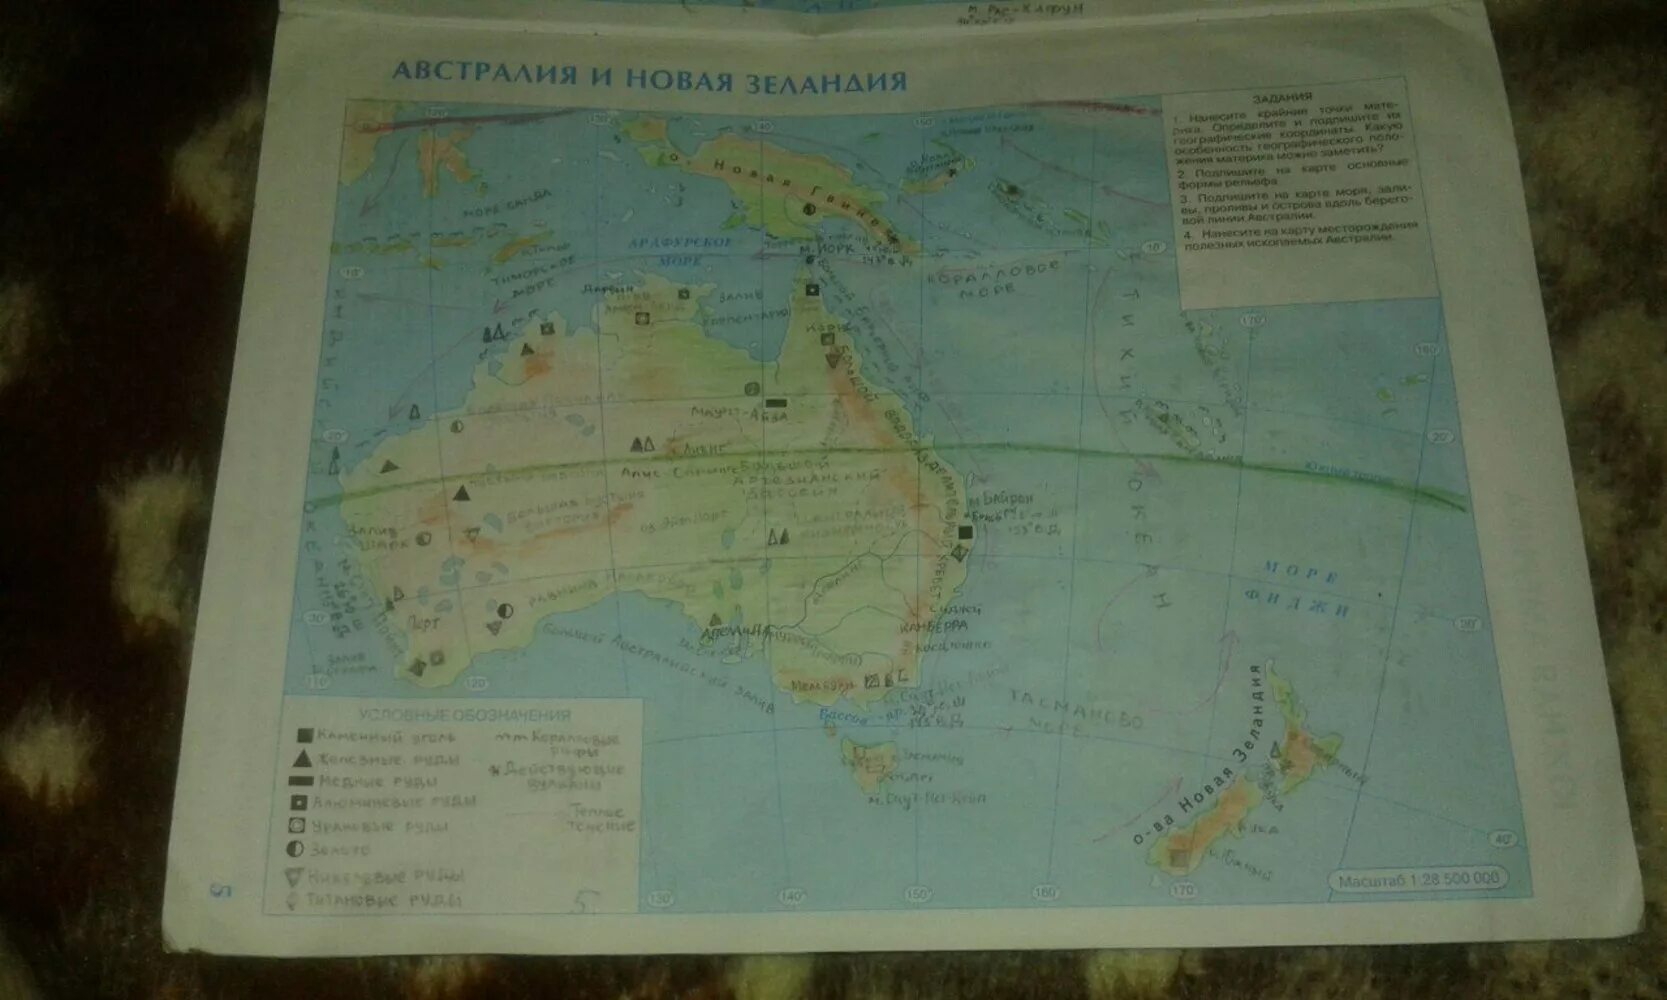 География 7 класс стр 58. География 7 класс контурные карты Австралия и новая Зеландия. Гдз контурная карта Австралии новая Зеландия седьмой класс география. Контурная карта Австралии и новой Зеландии 7 класс номенклатура. Гдз по контурной карте по географии 7 класс Австралия и новая Зеландия.